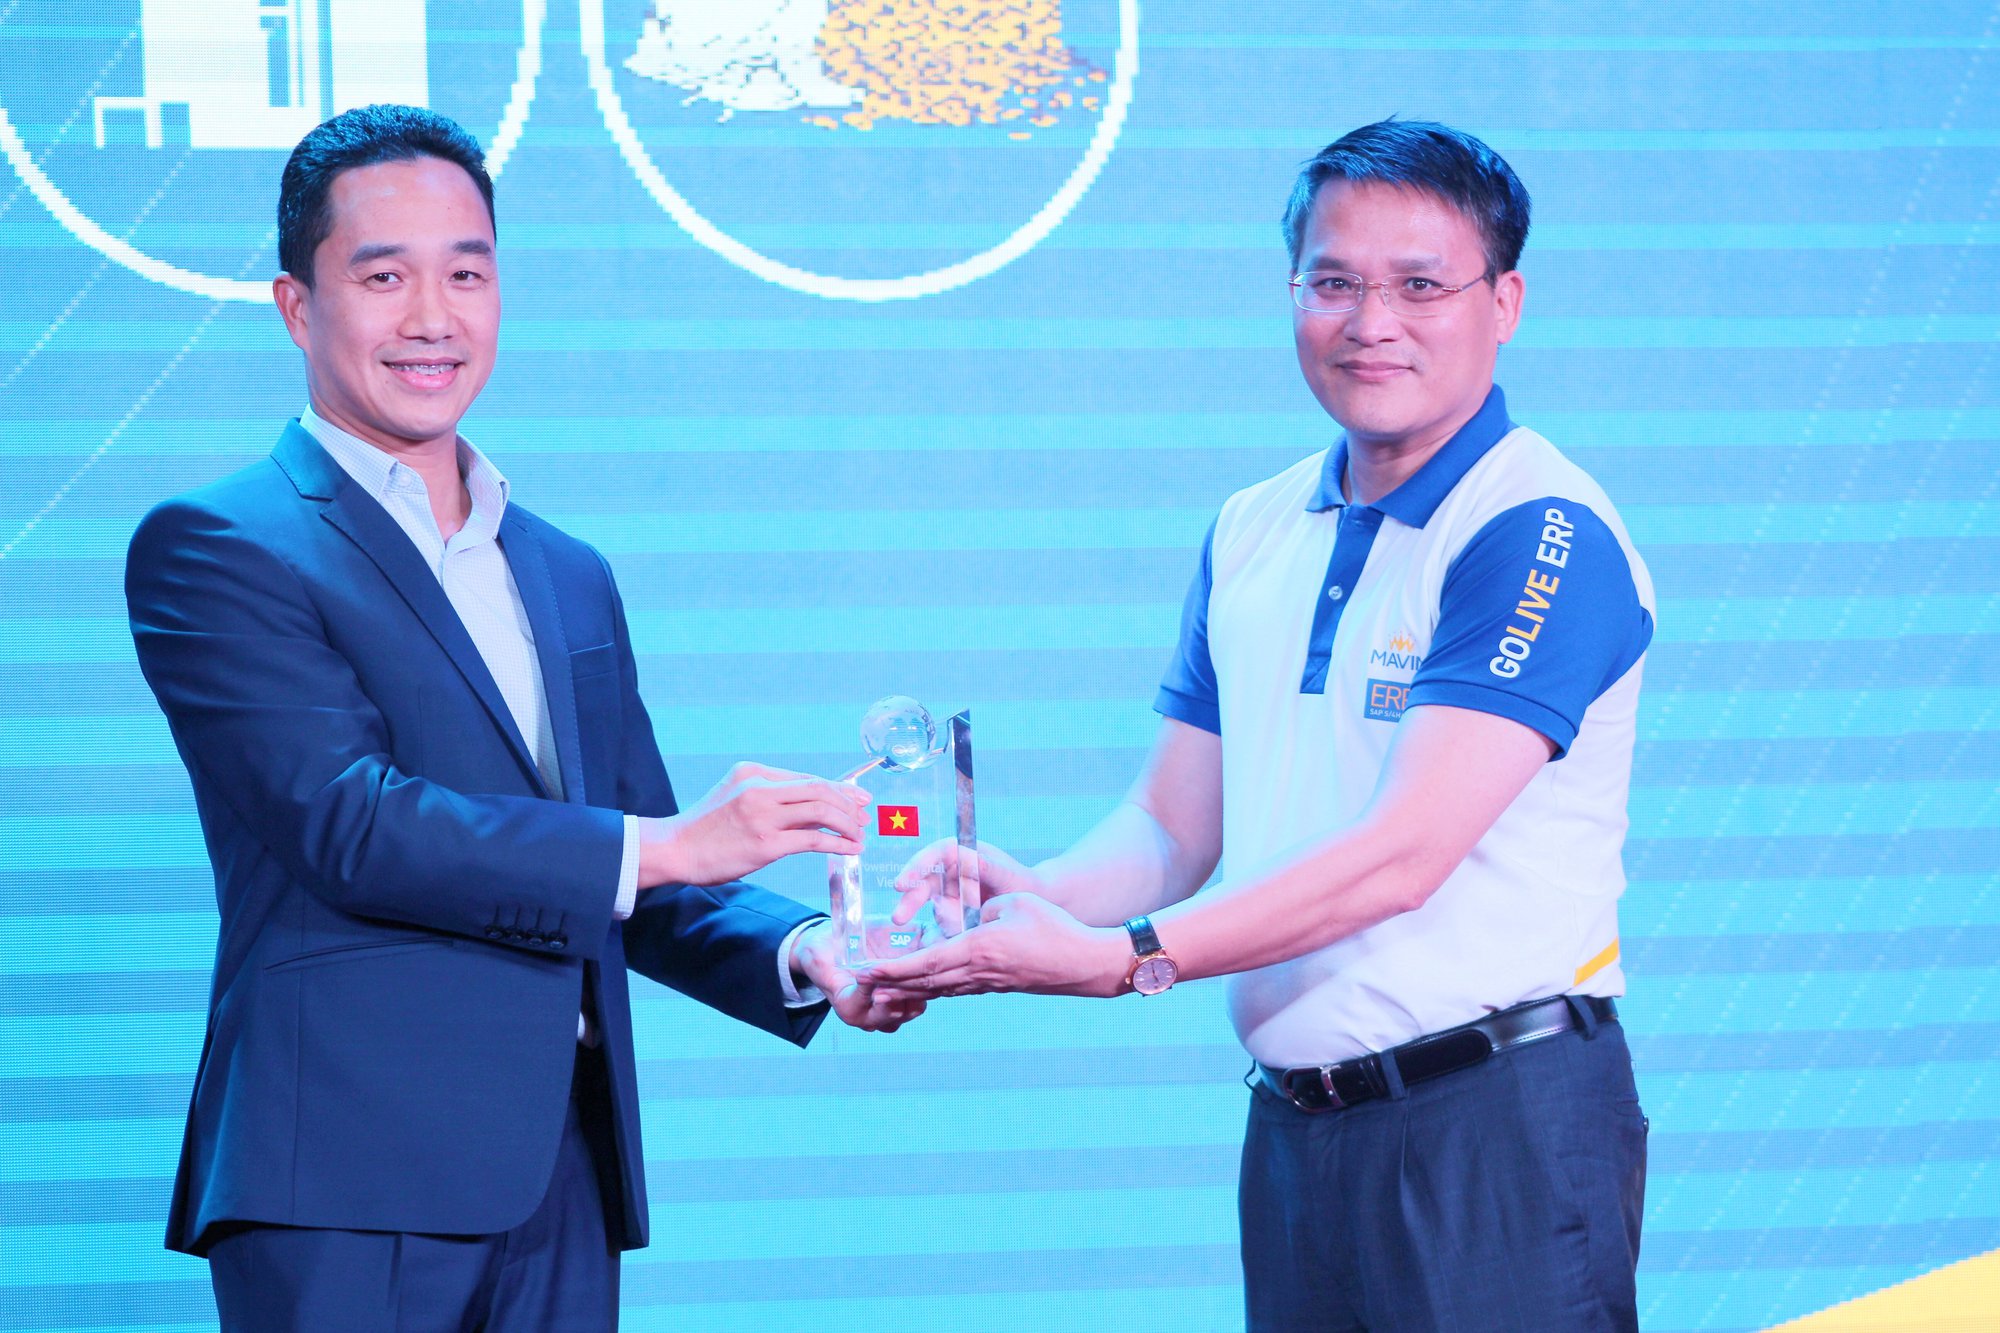 Mavin được trao giải “Doanh nghiệp tiên phong Đông Nam Á” từ SAP - Ảnh 2.